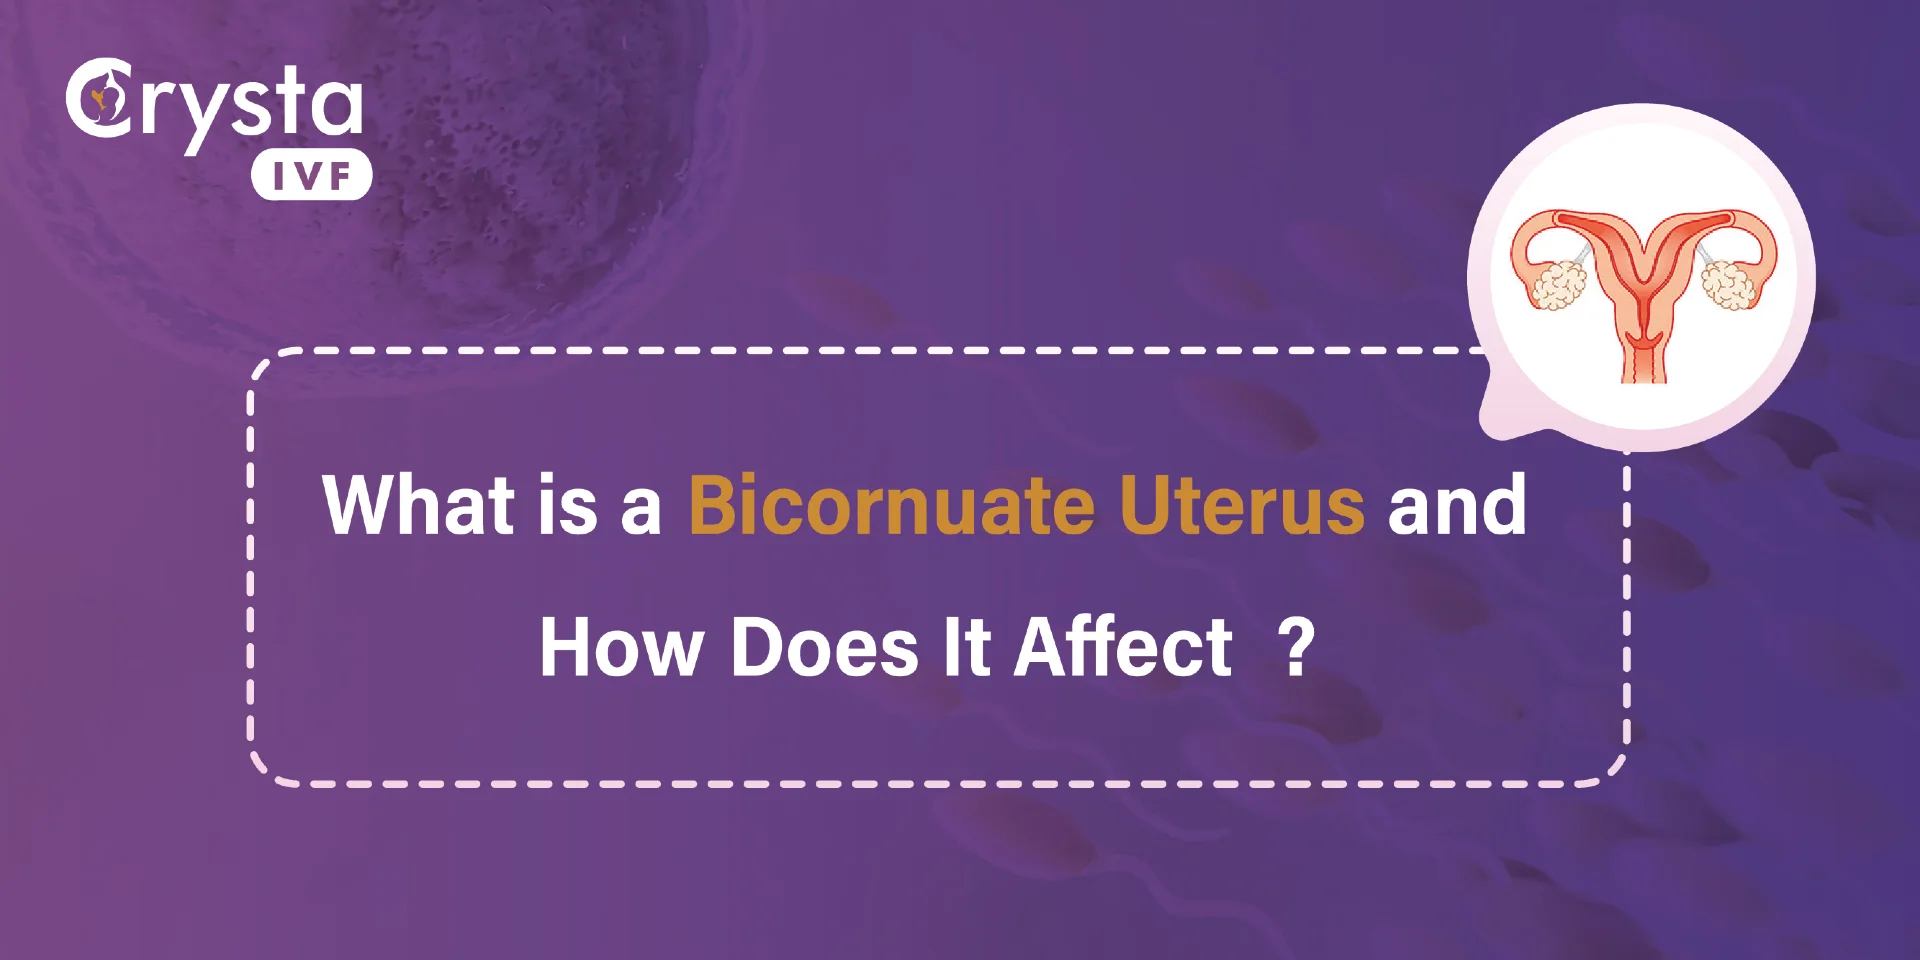 What Is a Bicornuate Uterus